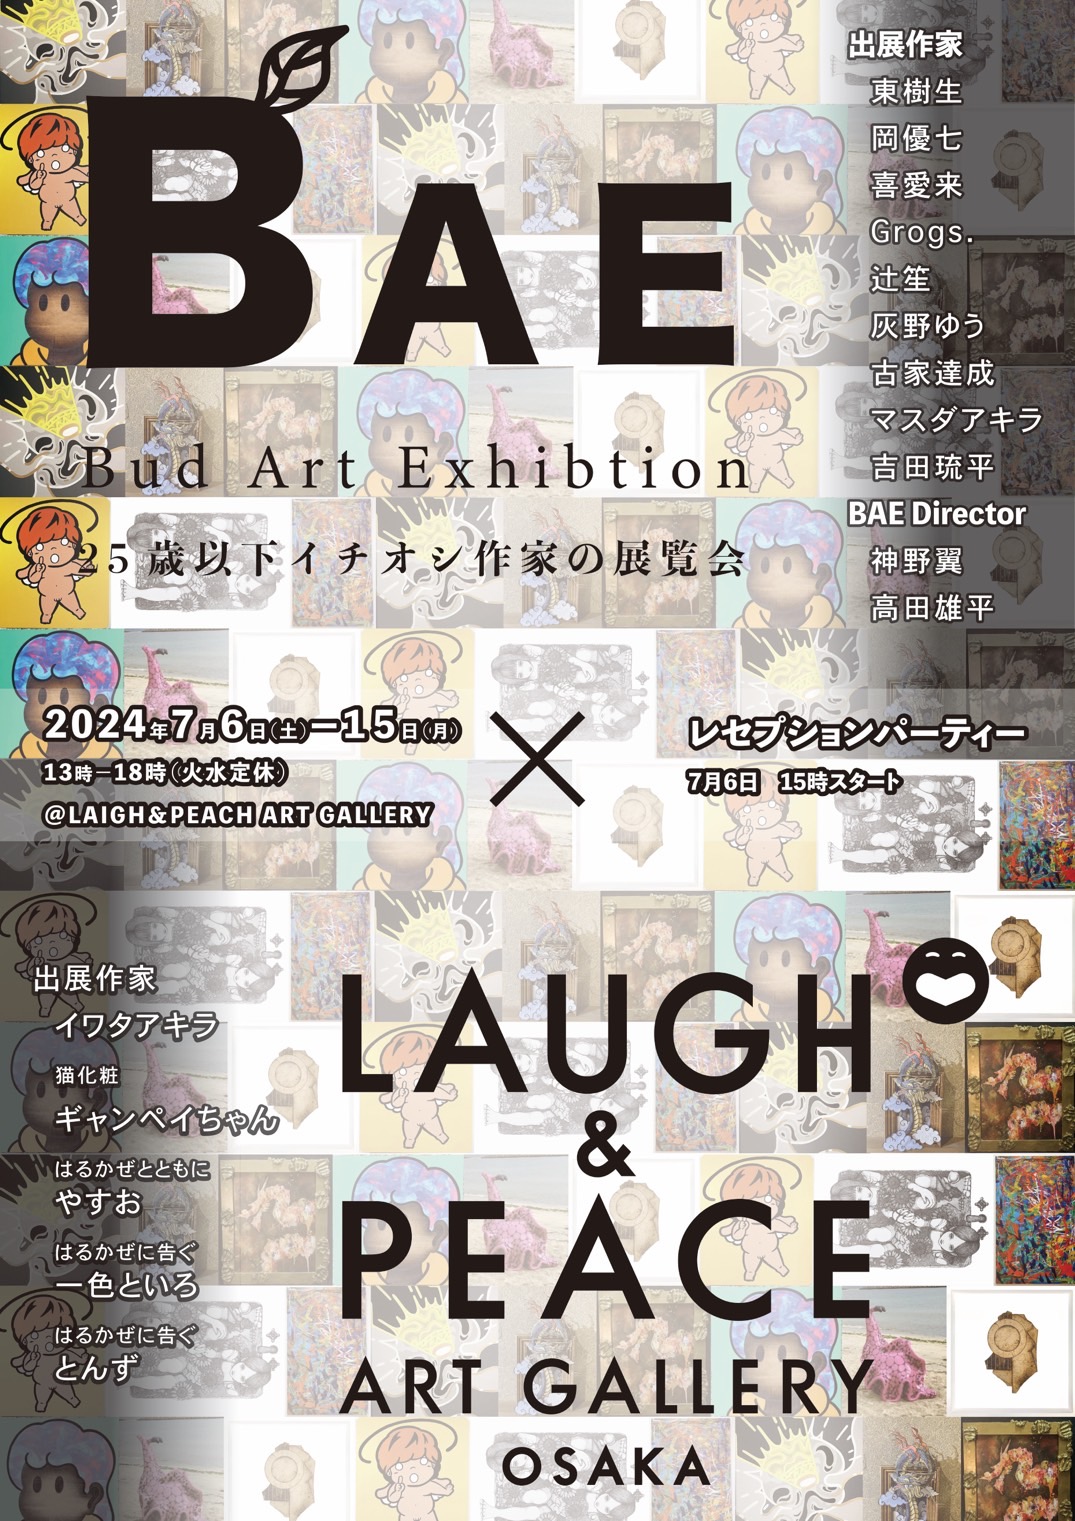 関西で今一番注目されている若手作家 9組×今注目されている若手芸人 4組による合同アート展『Bud Art Exhibition(BAE企画展)』開催！のサブ画像1